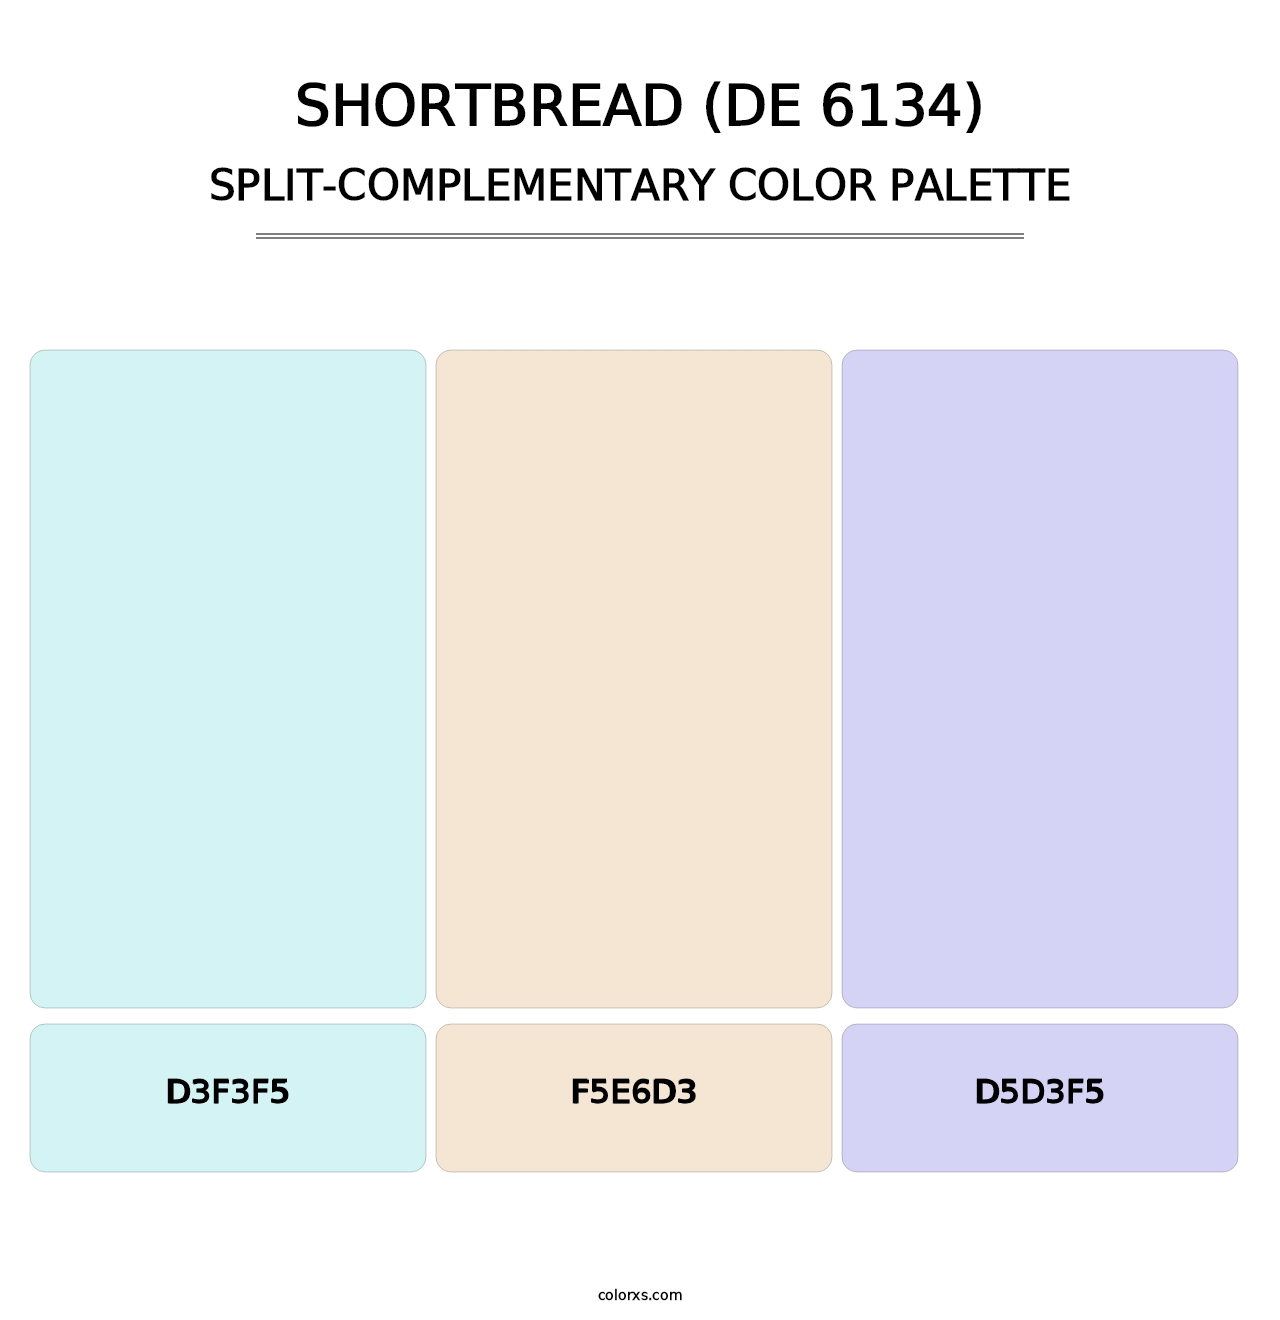 Shortbread (DE 6134) - Split-Complementary Color Palette